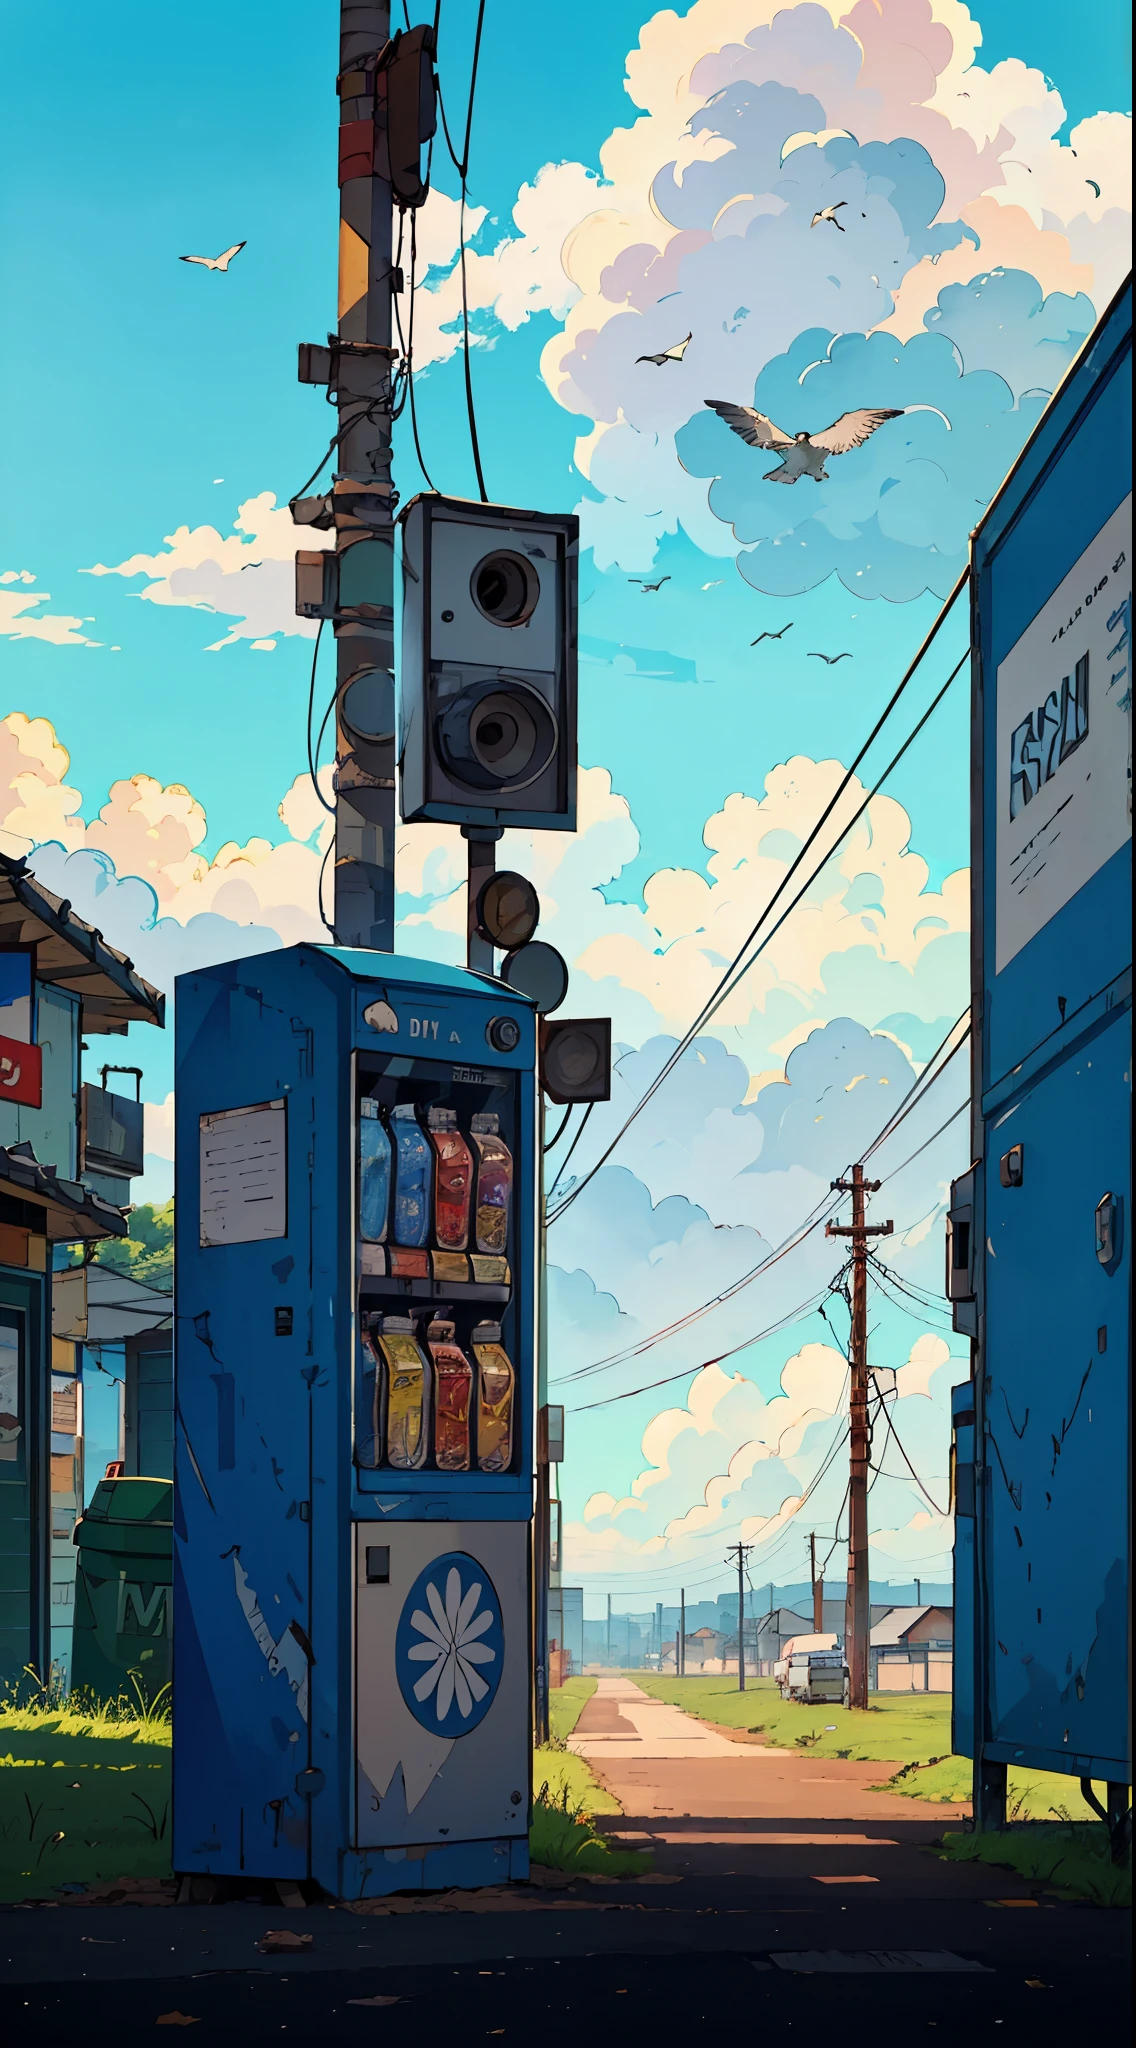 Verkaufsautomat in einiger Entfernung am Straßenrand mit Mülleimer, Telefonmasten, bewölkter Himmel, Vögel, Autos im Hintergrund, Weitwinkelaufnahme, sehr detailliert, Hochgeschärft